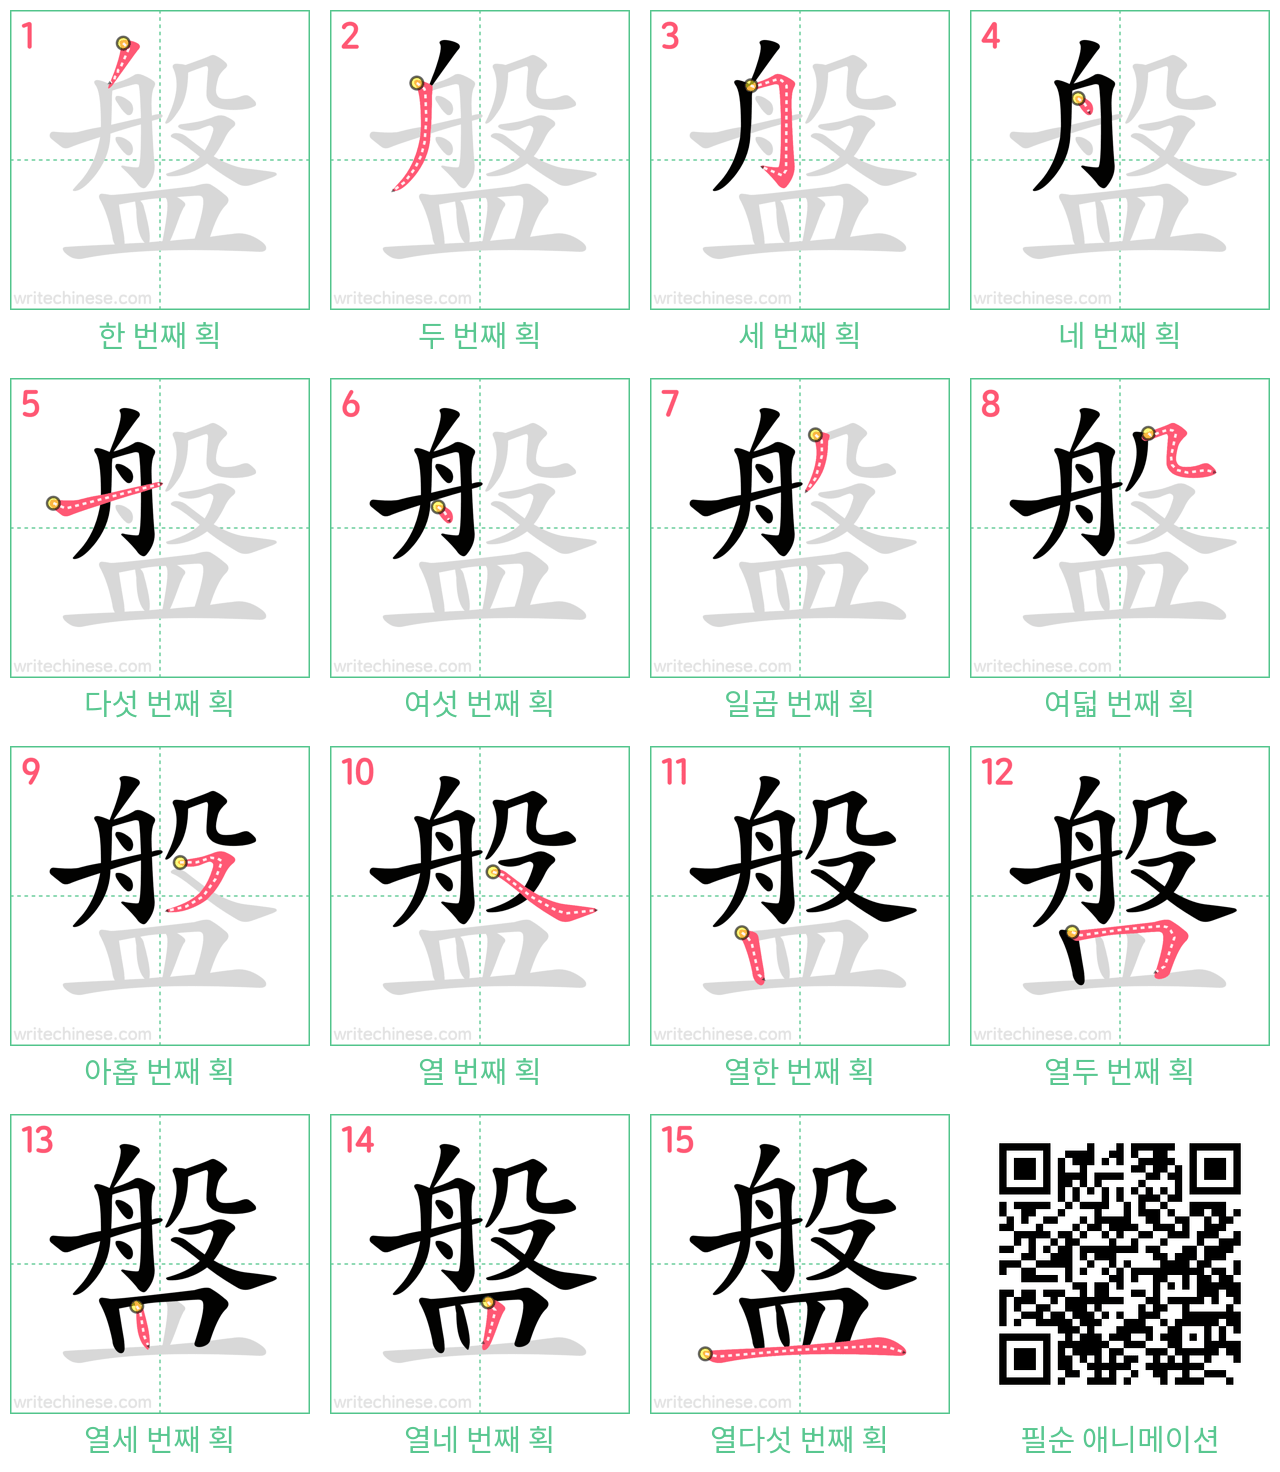 盤 step-by-step stroke order diagrams